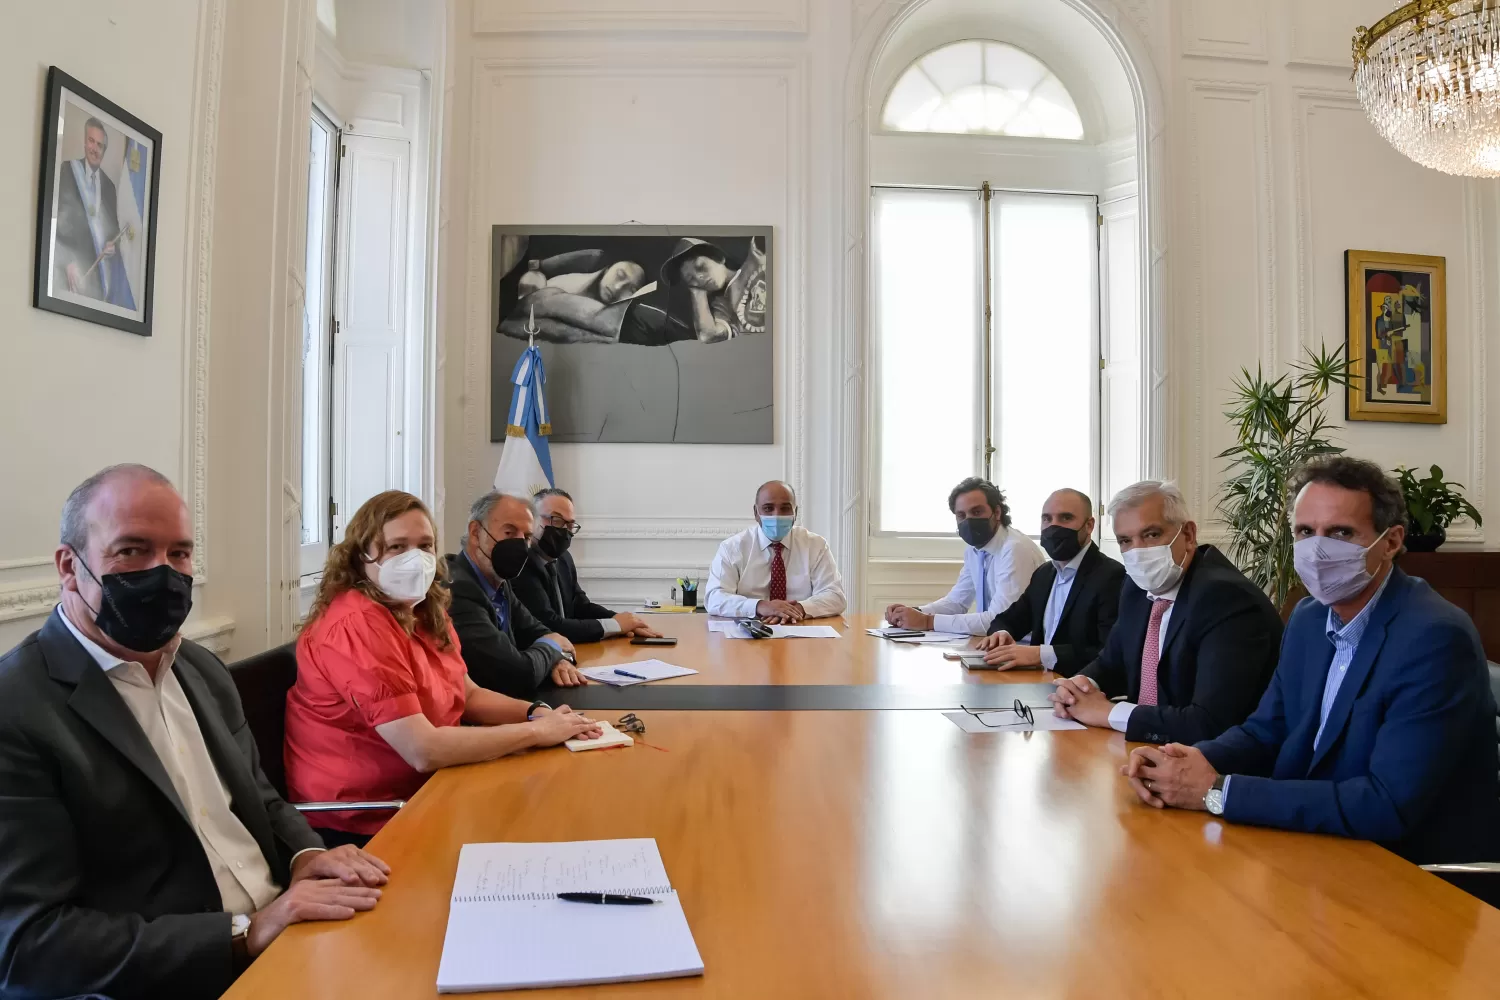 EN CASA ROSADA. Manzur, acompañado por su equipo, se reunió con ministros para ultimar detalles de cara a la gira presidencial. Foto: Twitter @JuanManzurOK